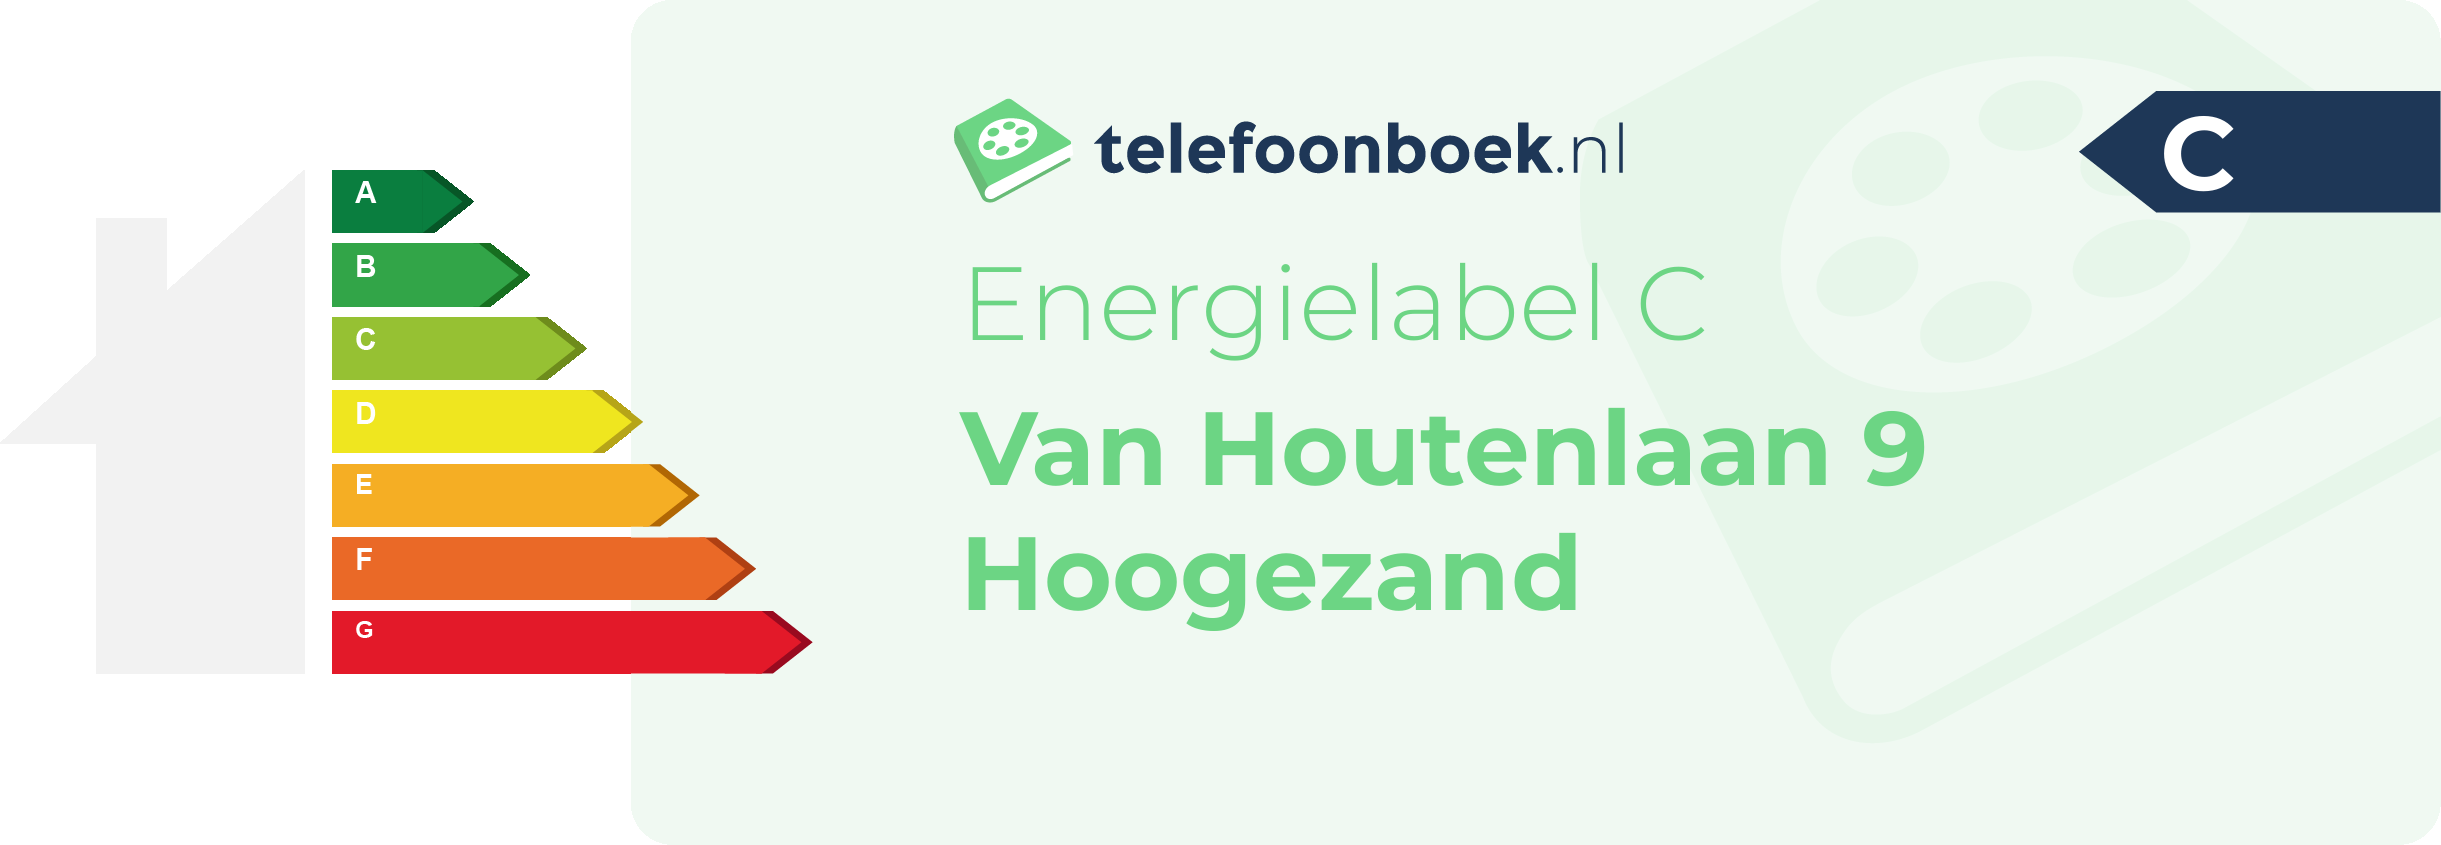 Energielabel Van Houtenlaan 9 Hoogezand